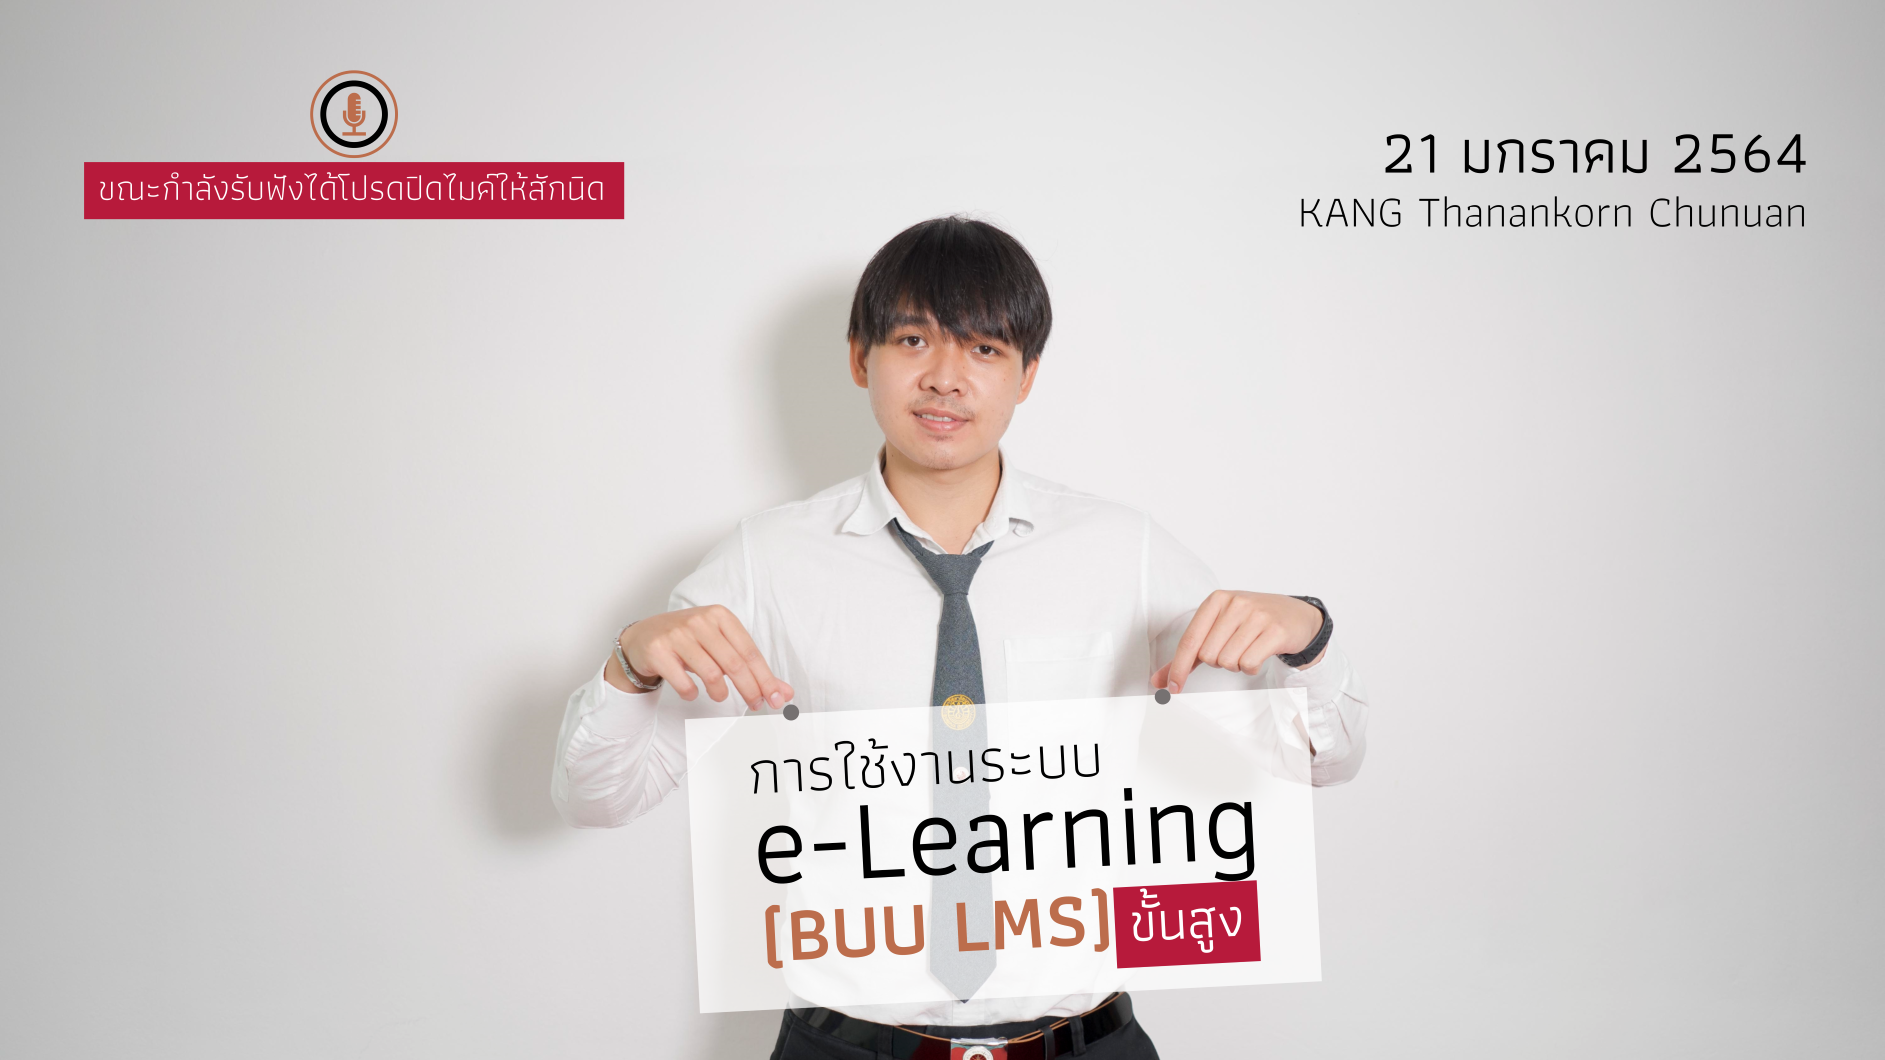 การใช้งานระบบ e-Learning (BUU LMS) ระดับสูง CC016